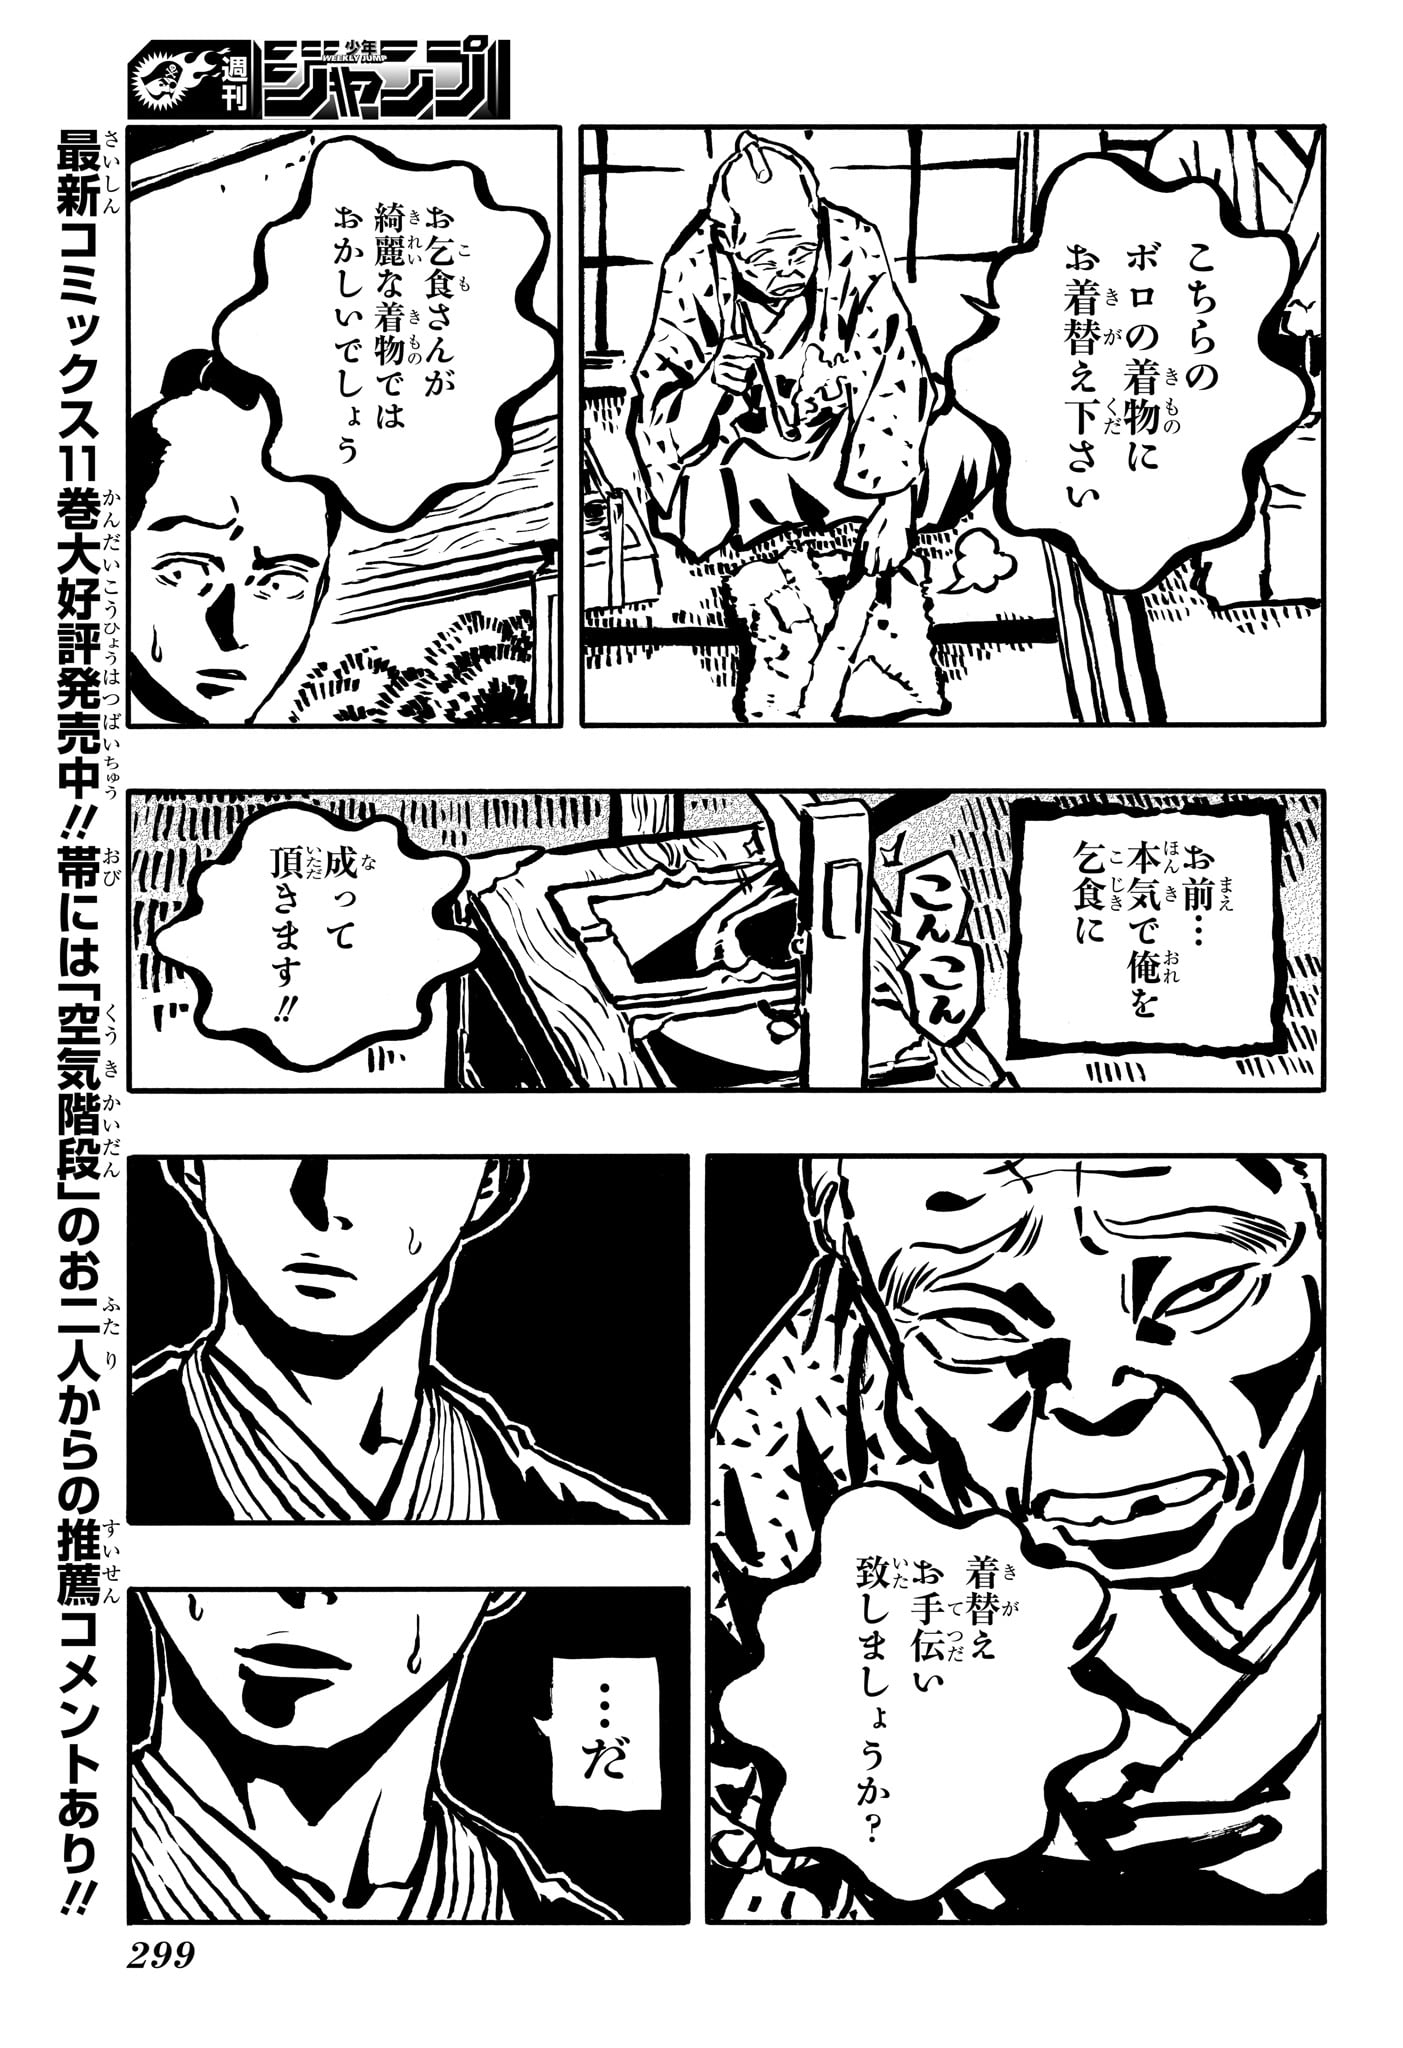 Akane-Banashi - Chapter 113 - Page 3